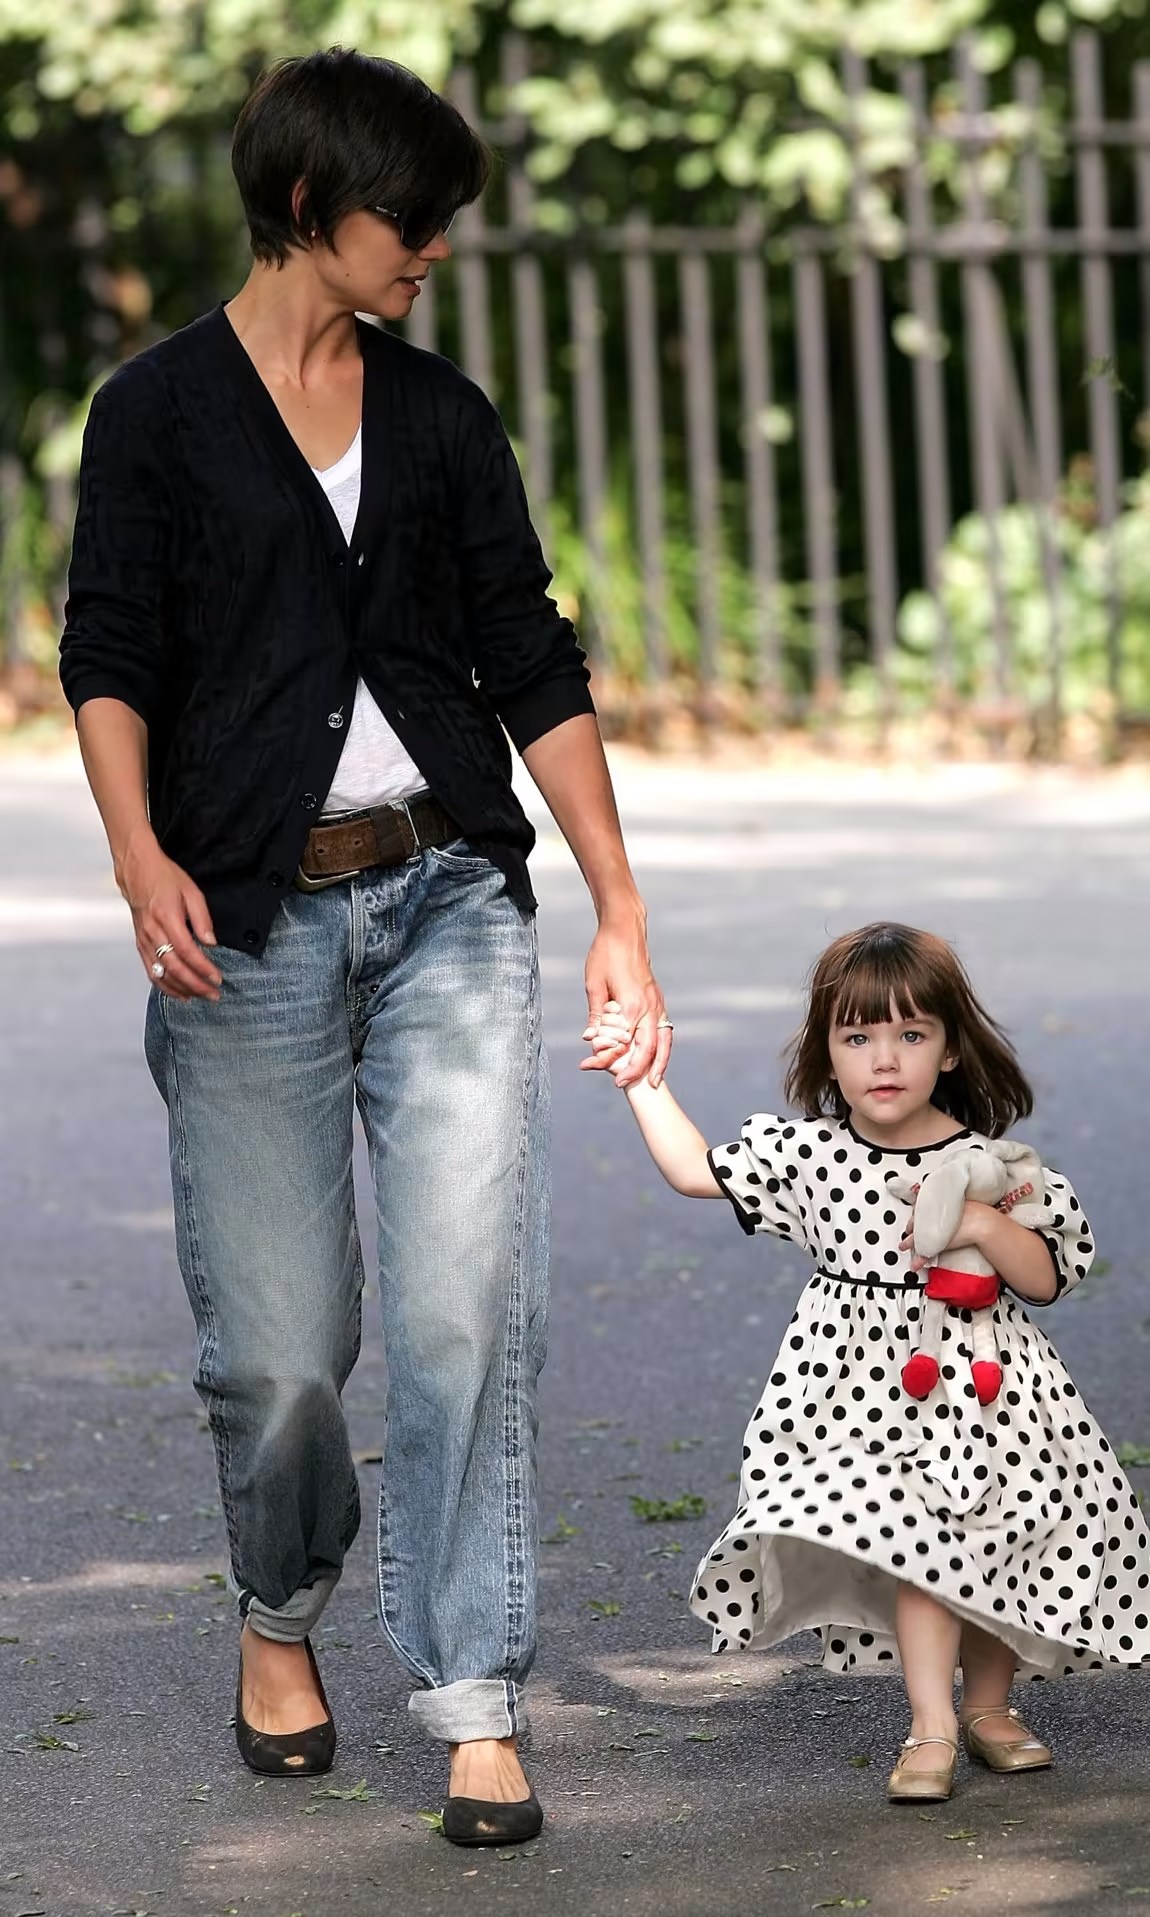 Con gái Tom Cruise được chú ý vì “dậy thì thành công”, xinh như thiên thần và mặc đẹp - 7